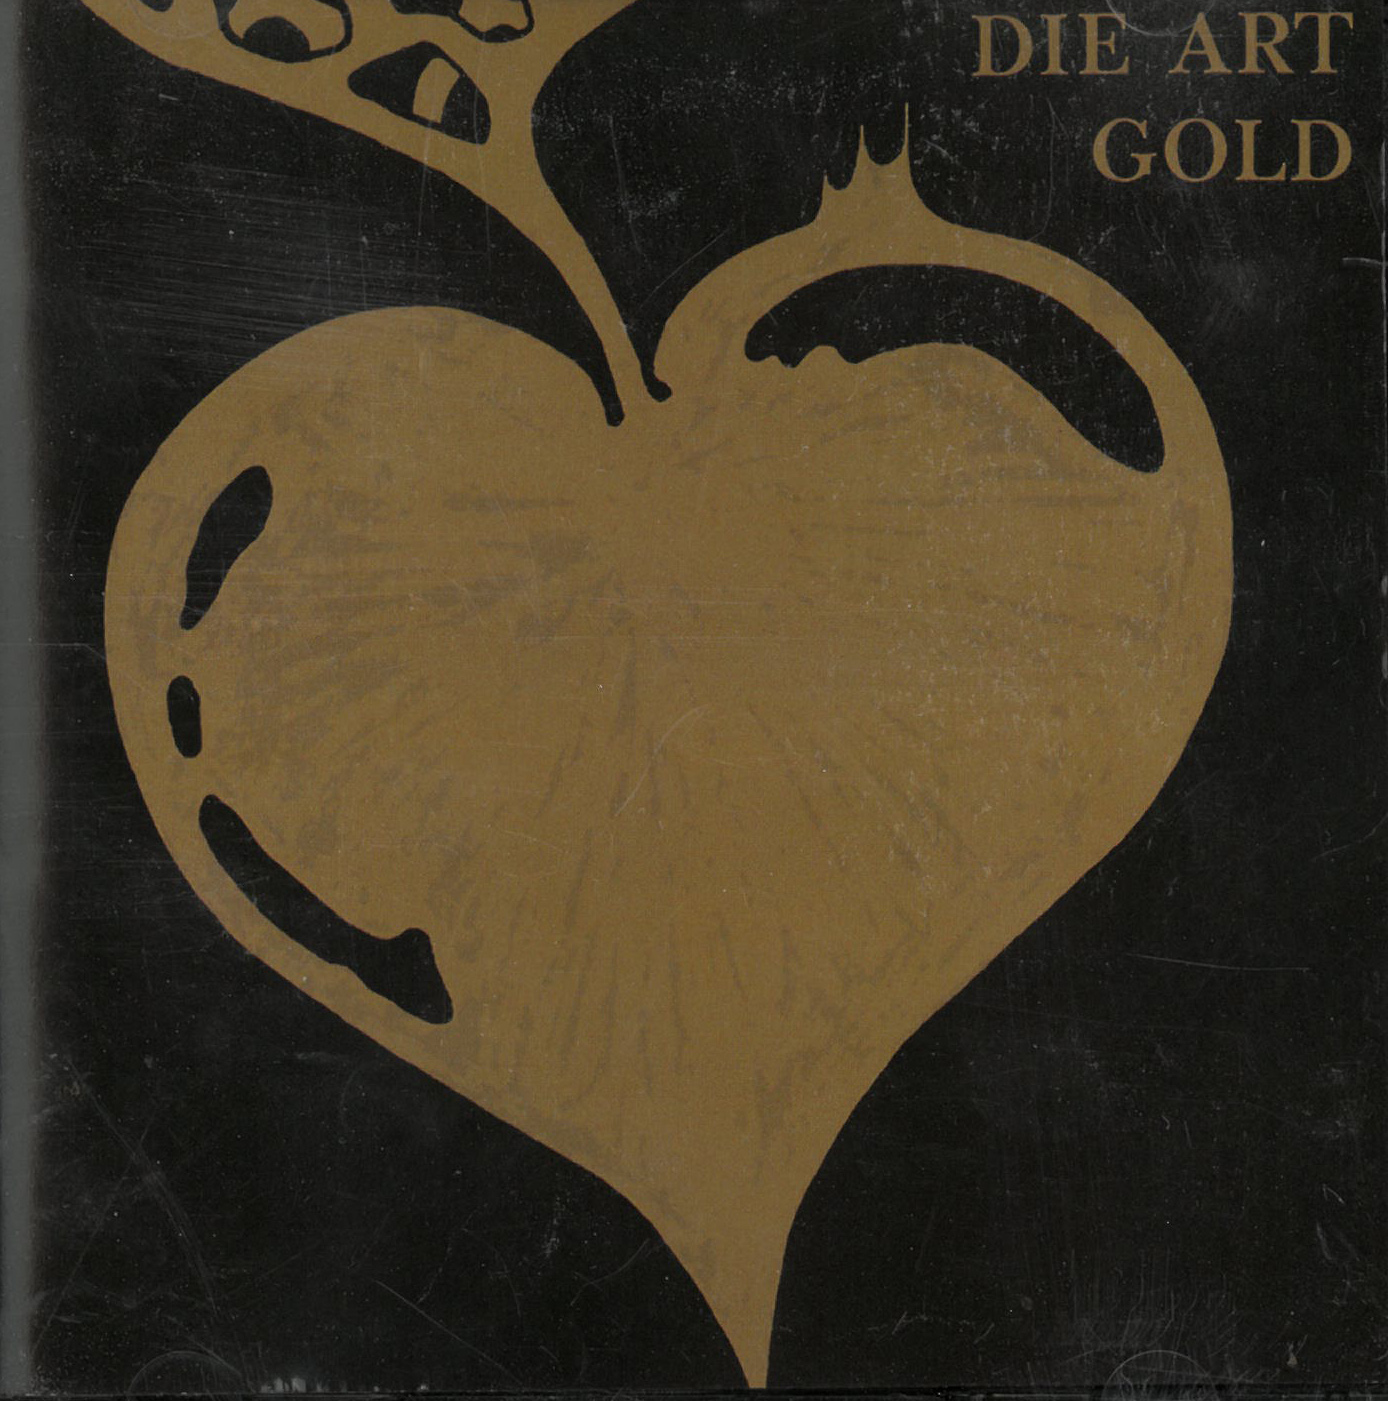 Art, Die Gold + Jane Plays Guitar CD 602114